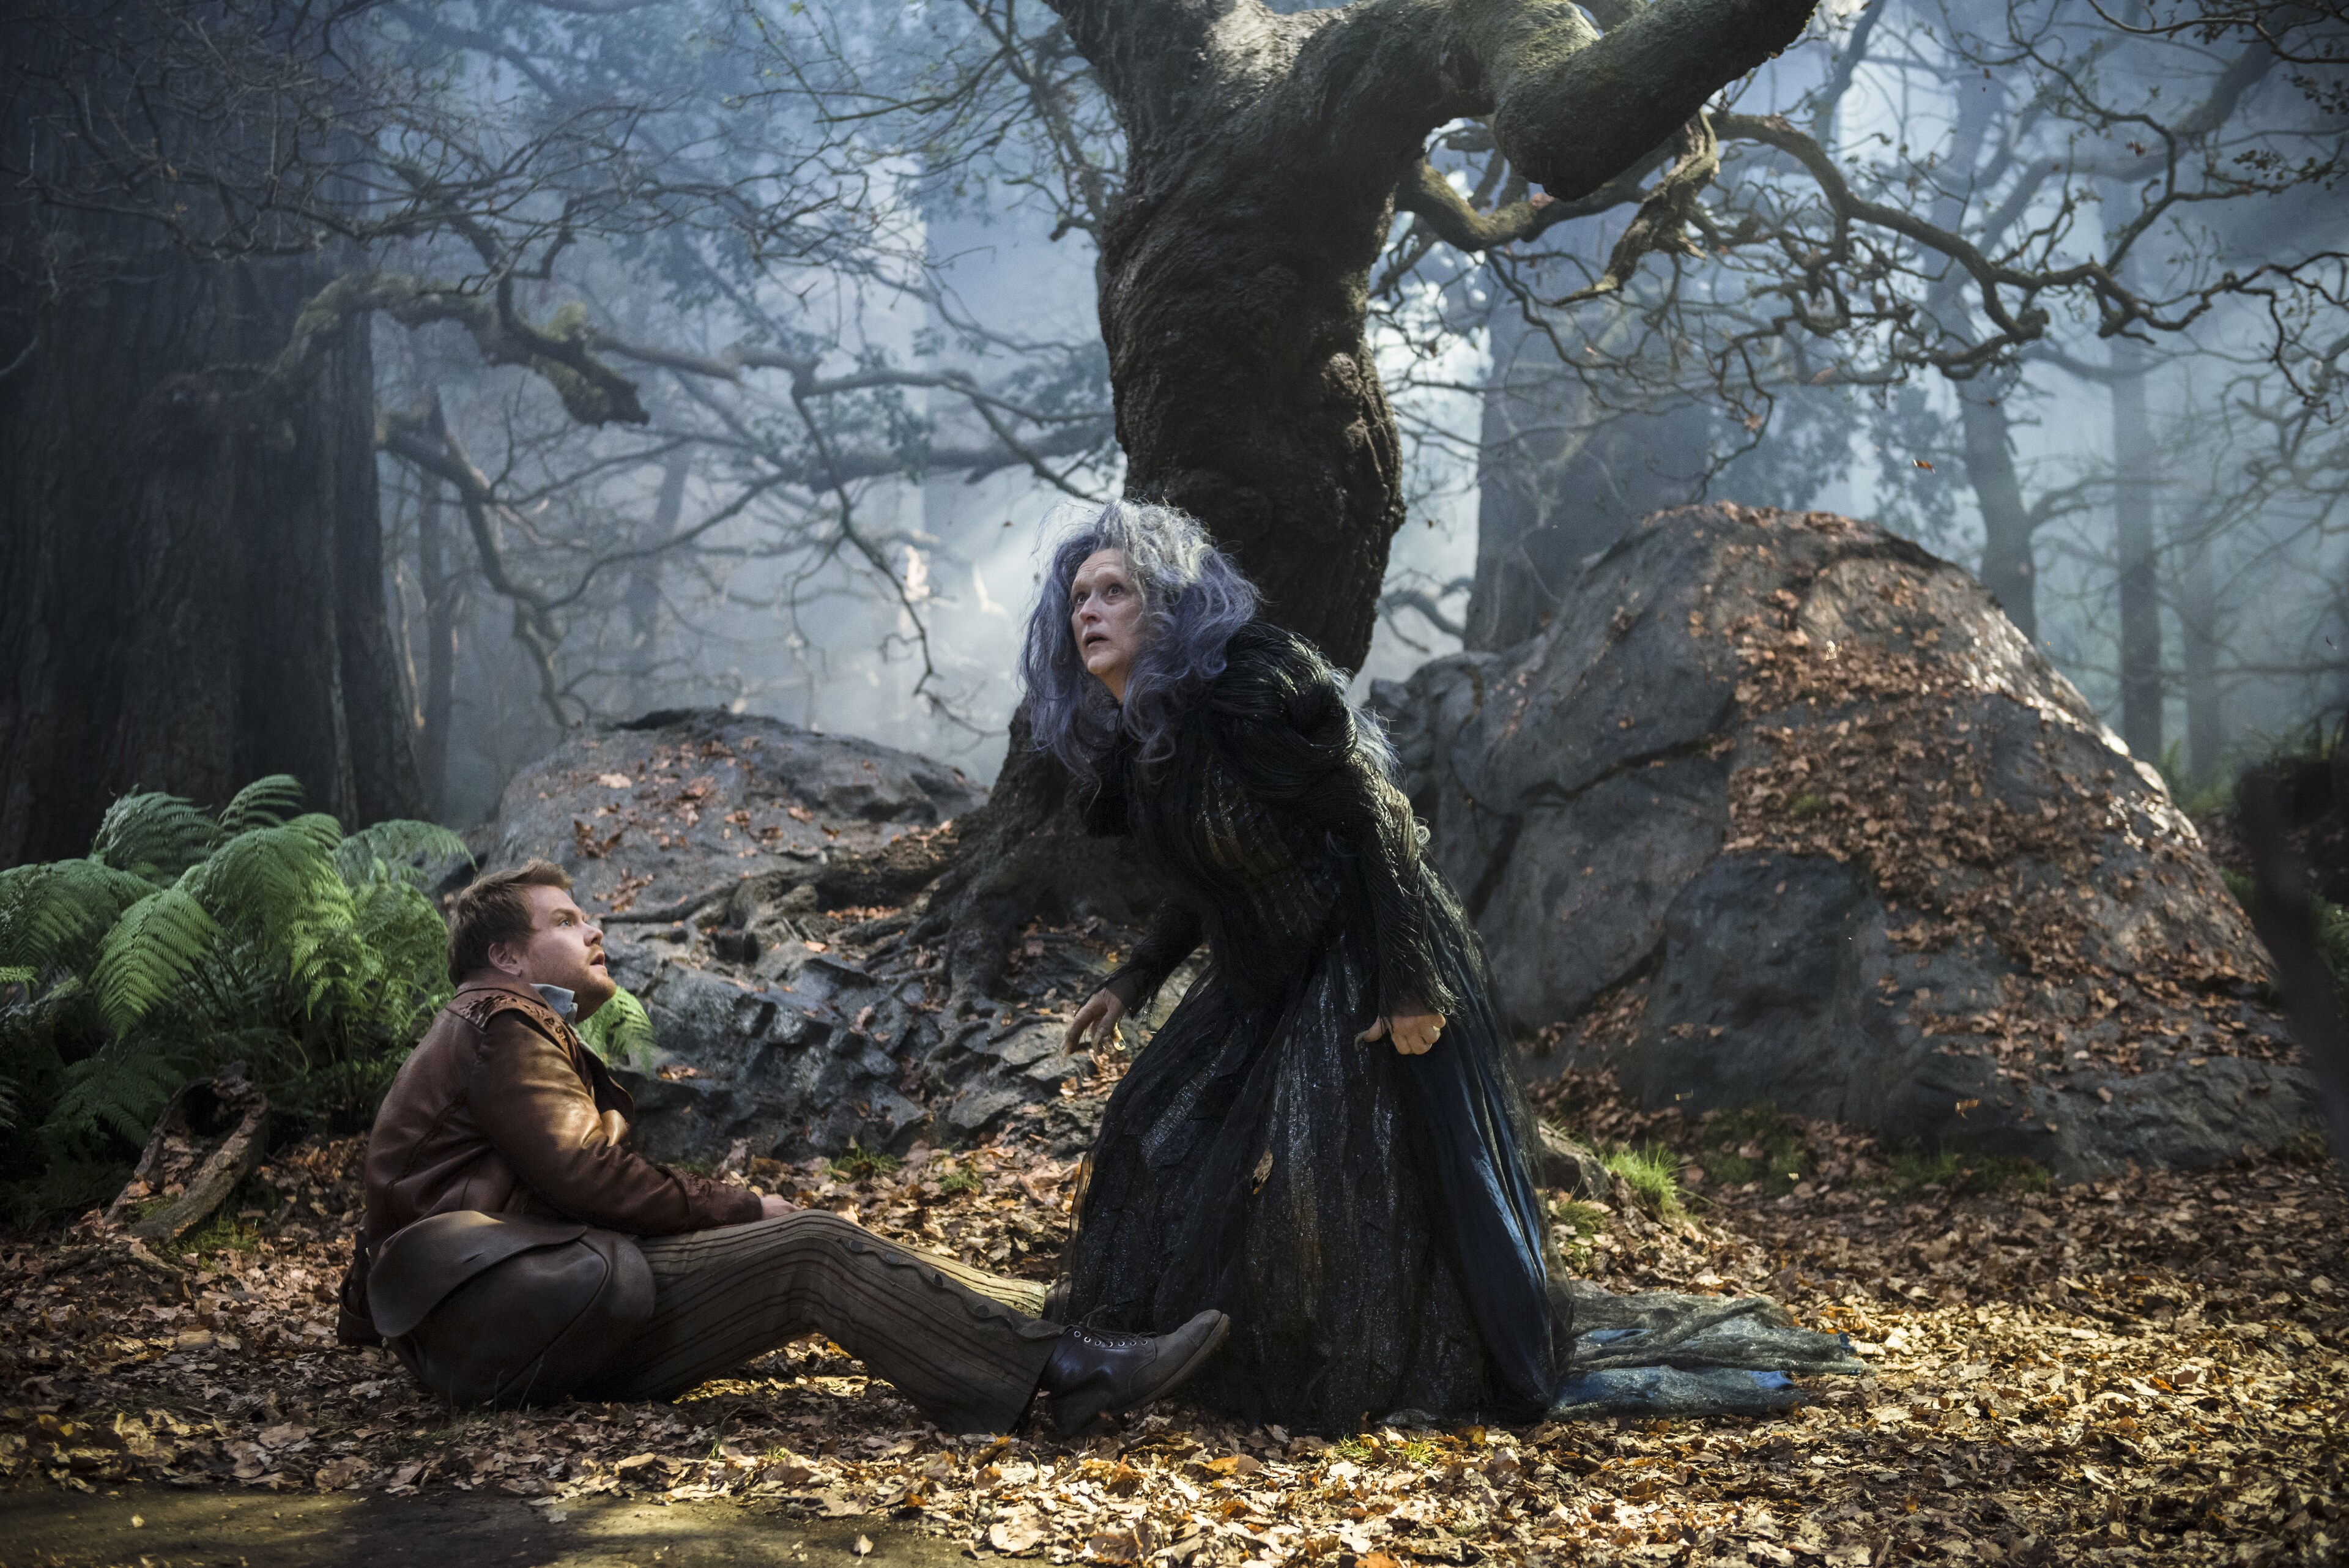 James Corden y Meryl Streep protagonizan “Into the Woods”, una mirada moderna de los adorados cue...